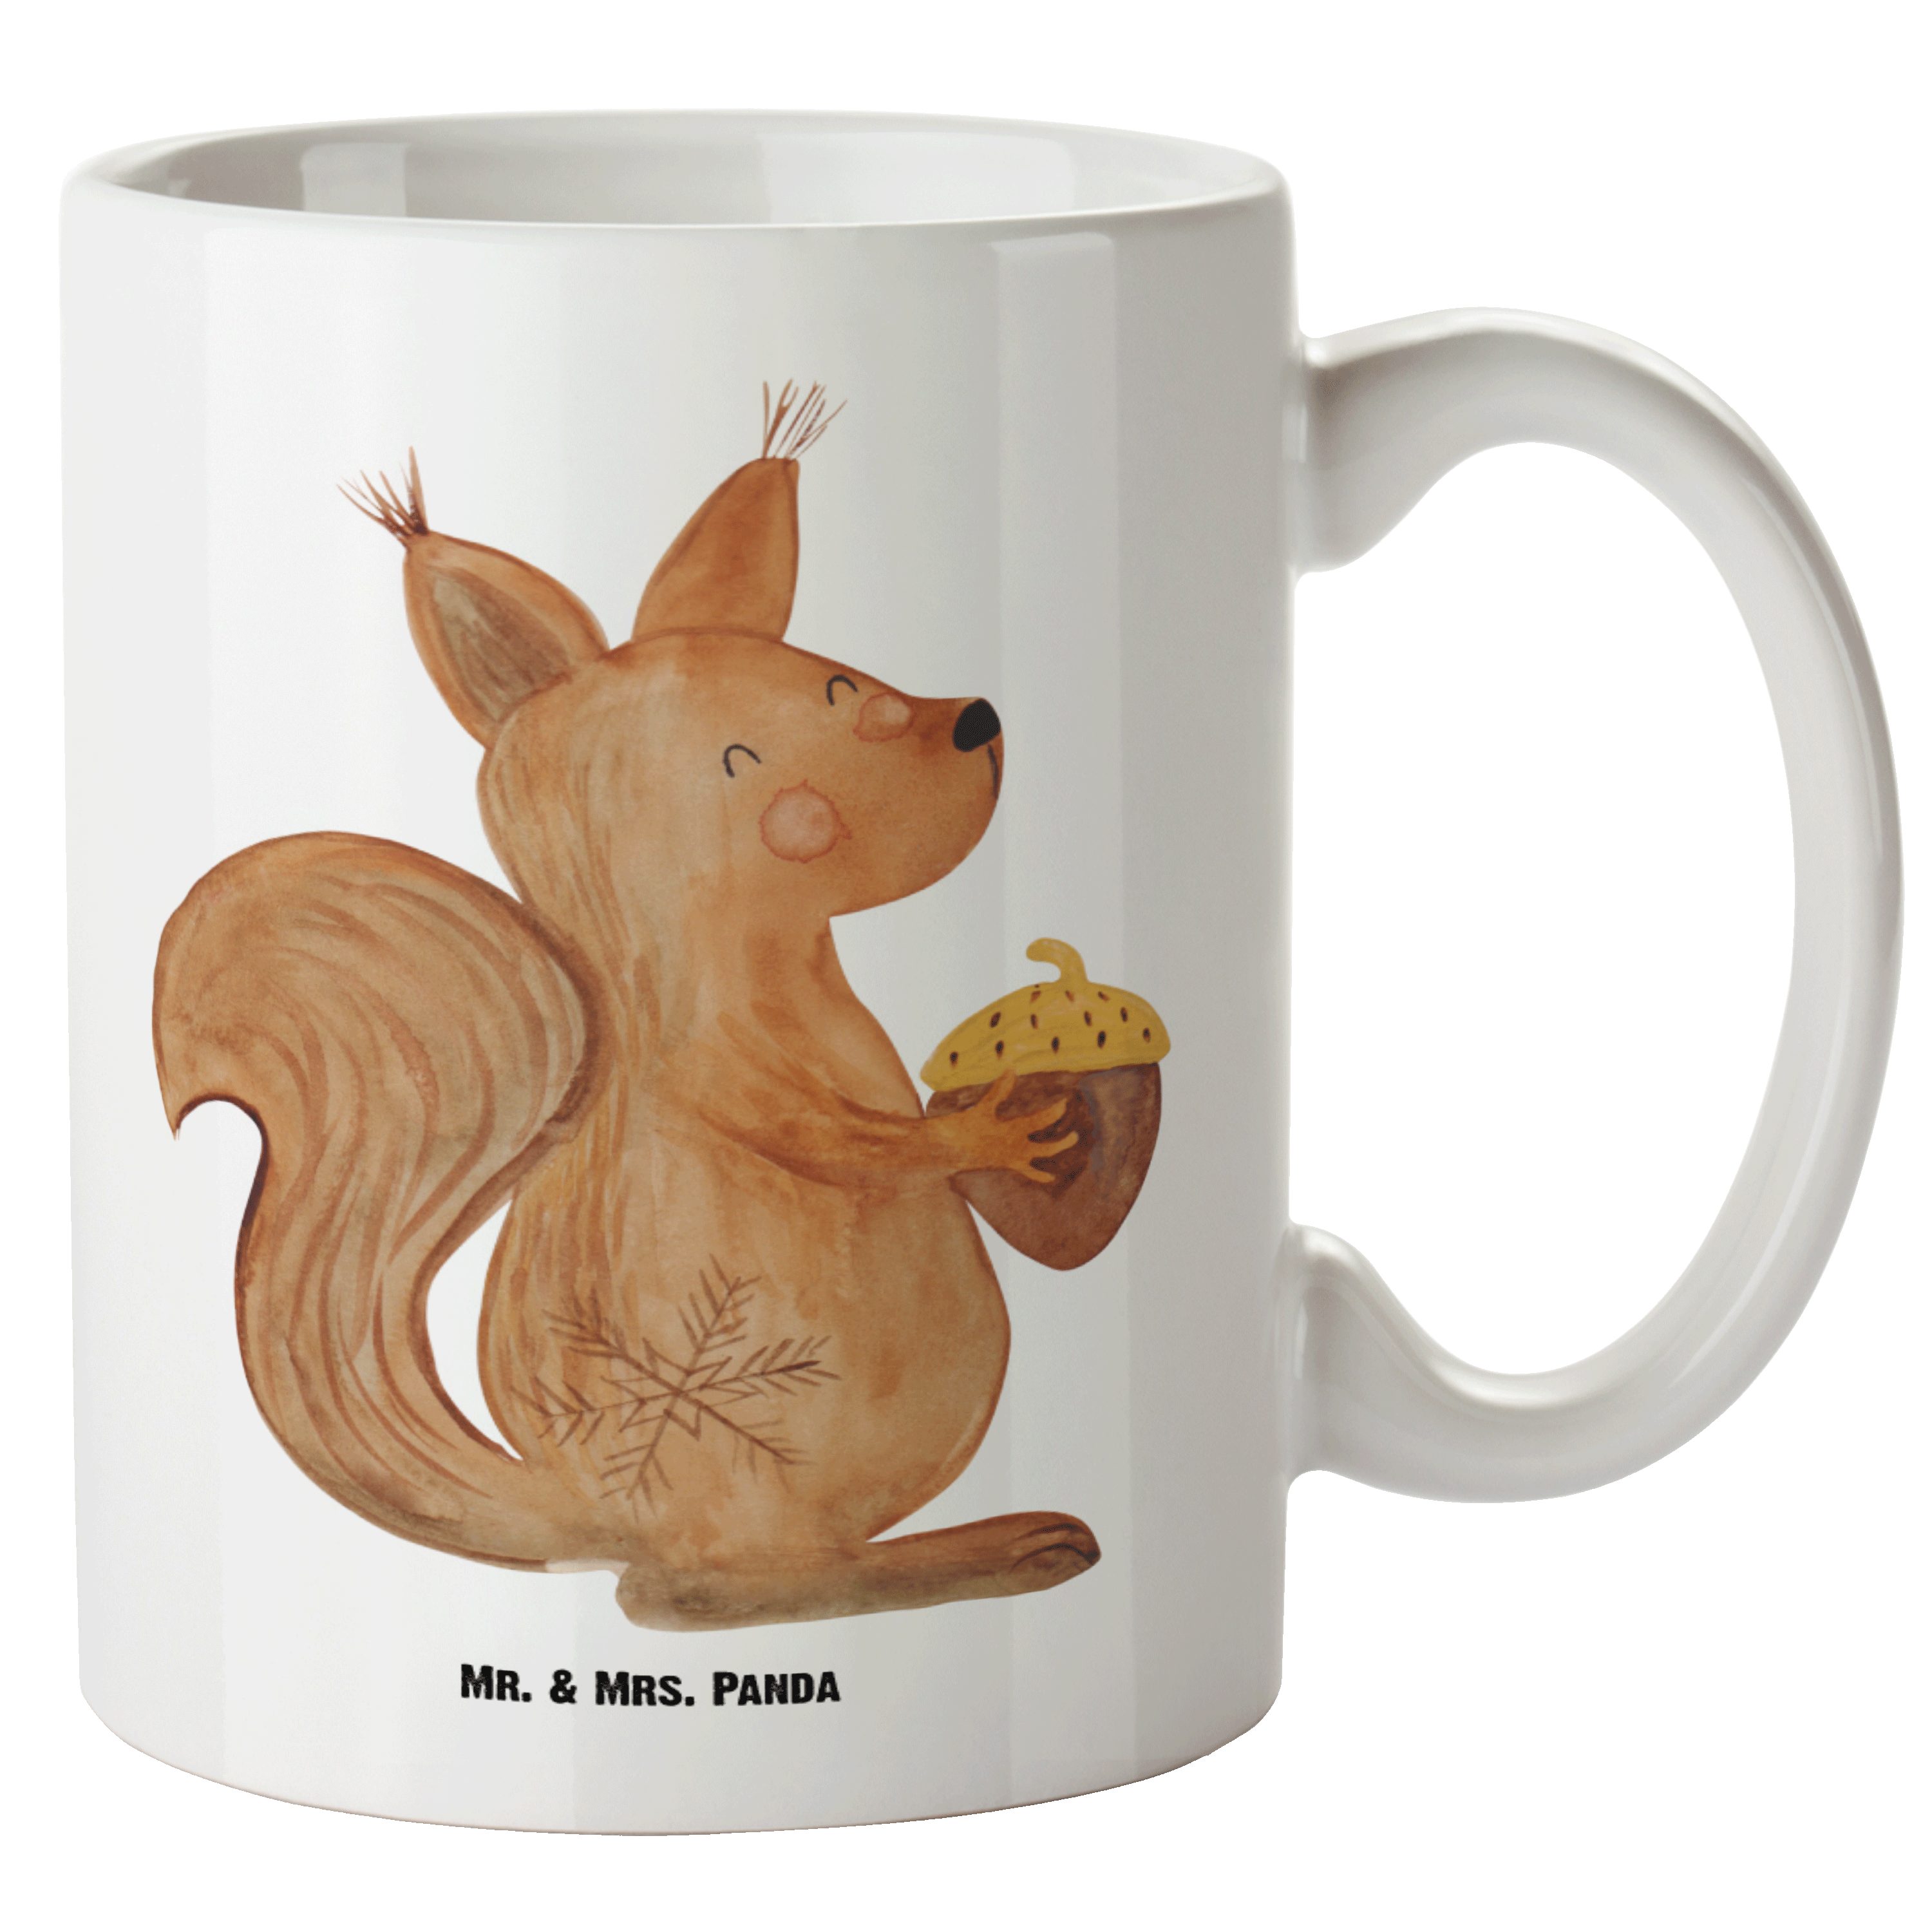 Mr. & Mrs. Panda Tasse Eichhörnchen Weihnachten - Weiß - Geschenk, Neujahr, Weihnachtsmotiv, XL Tasse Keramik